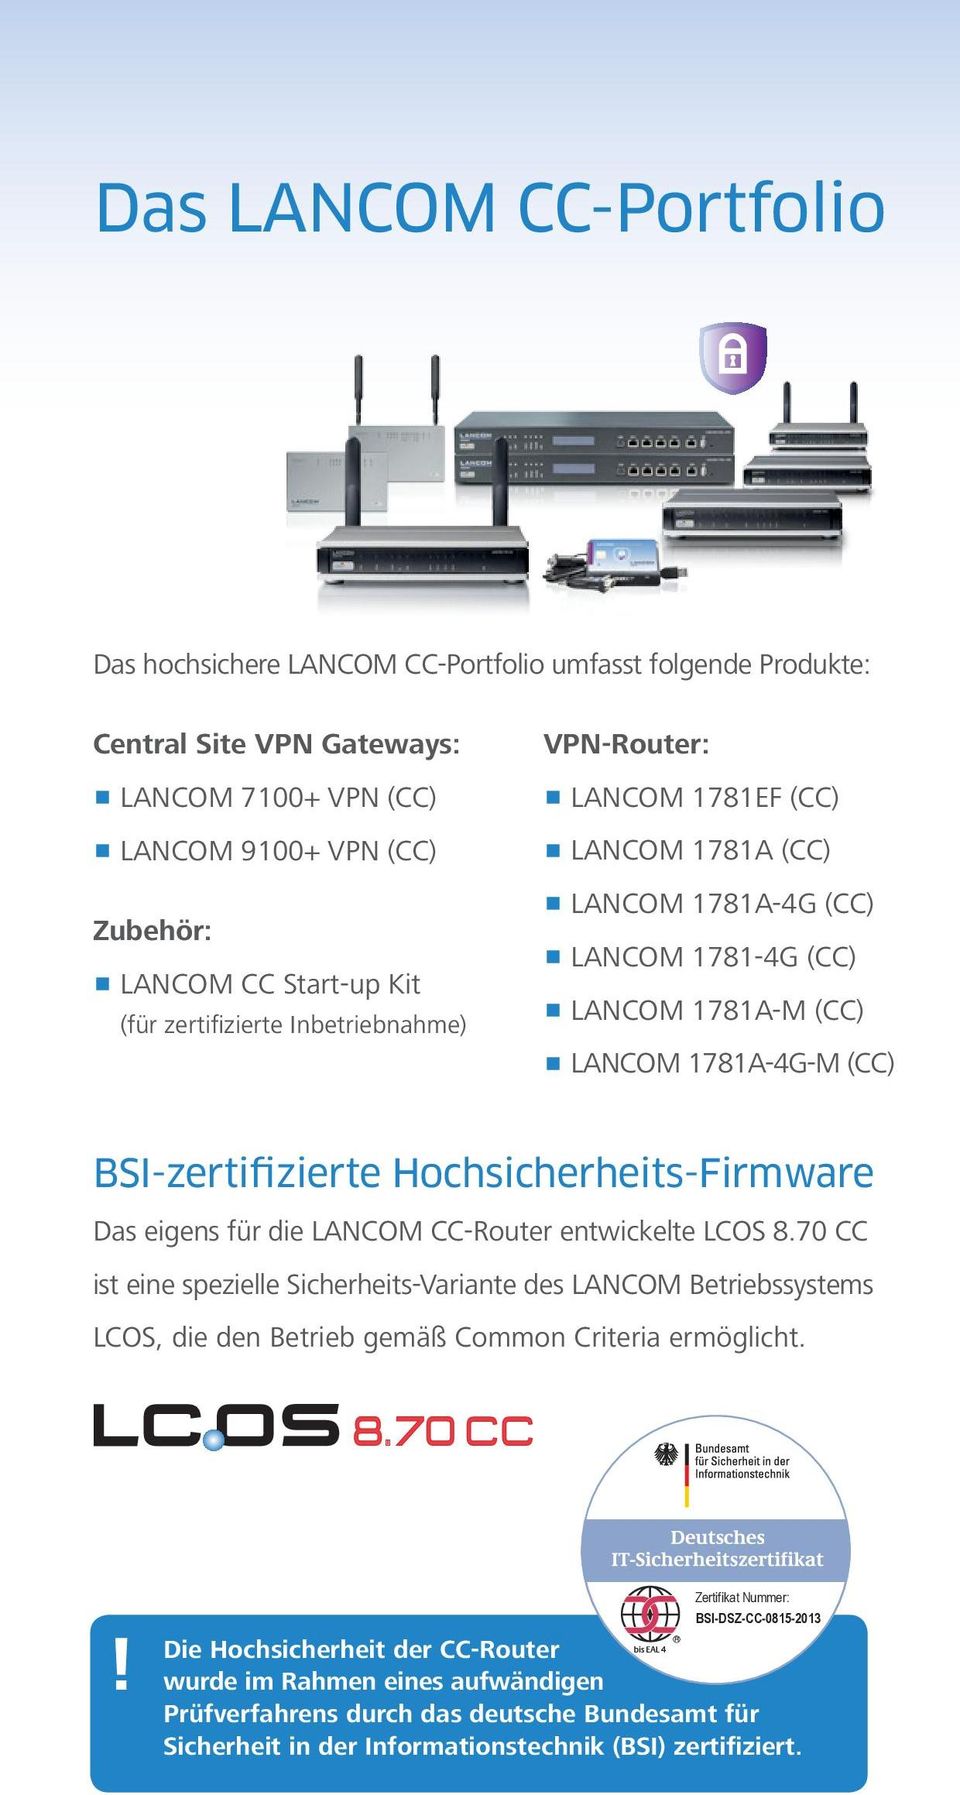 Hochsicherheits-Firmware Das eigens für die LANCOM CC-Router entwickelte LCOS 8.